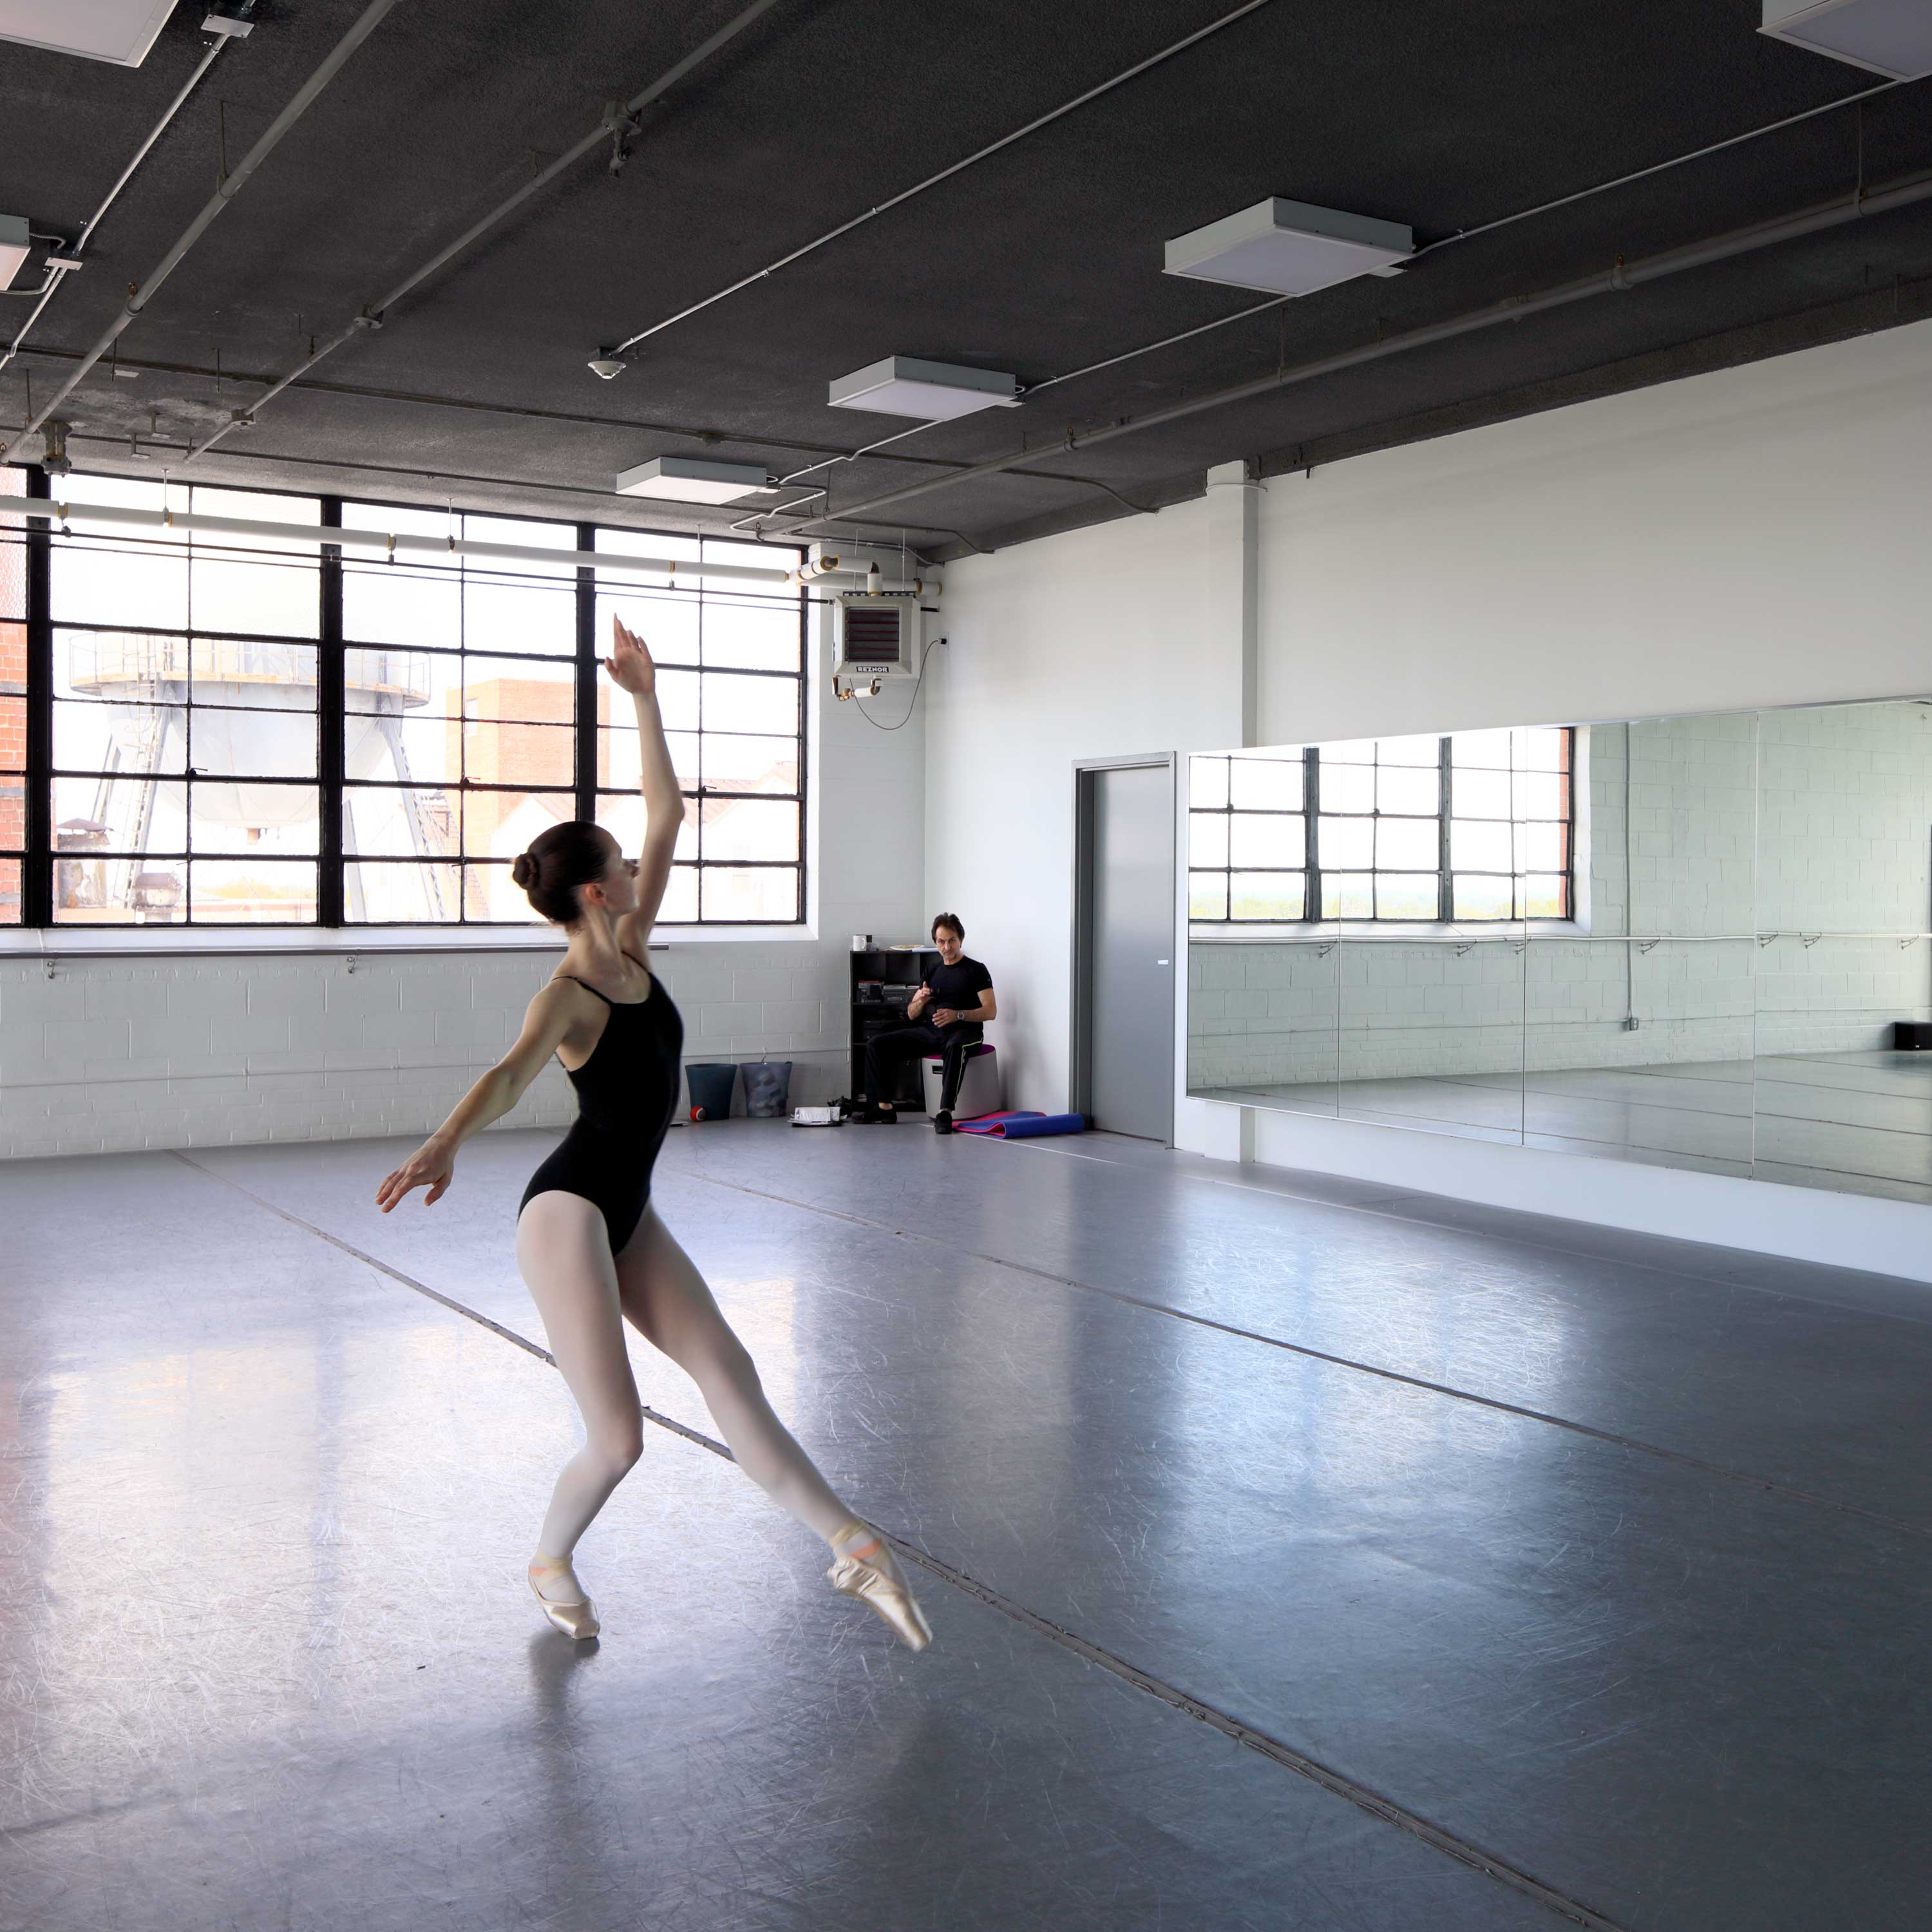 dancer in a rental ballet studio space